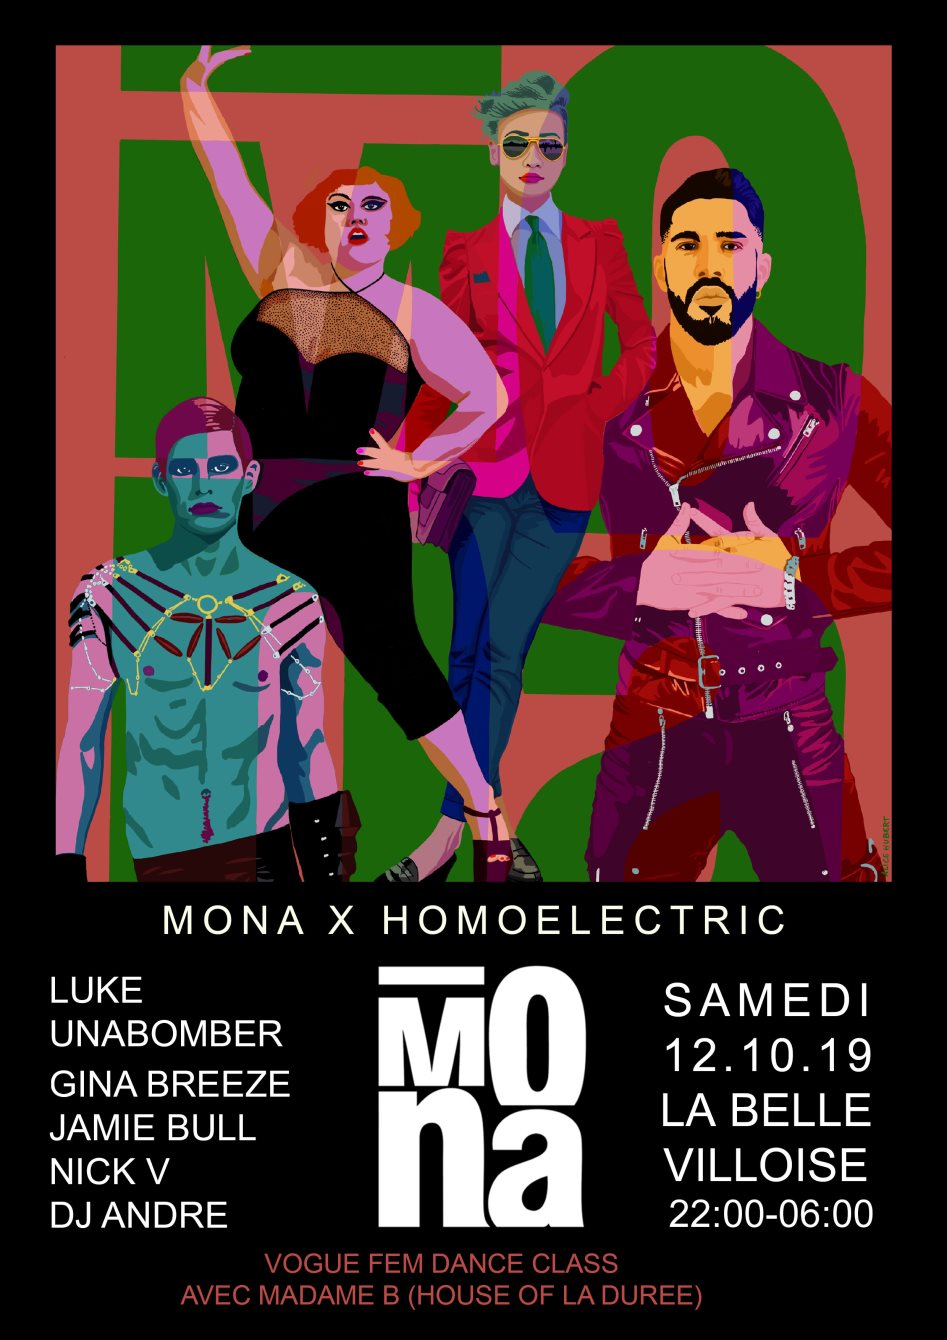 Mona with Homoelectric, Luke Unabomber, Nick V, Gina Breeze, Jamie Bull, DJ André - Flyer back